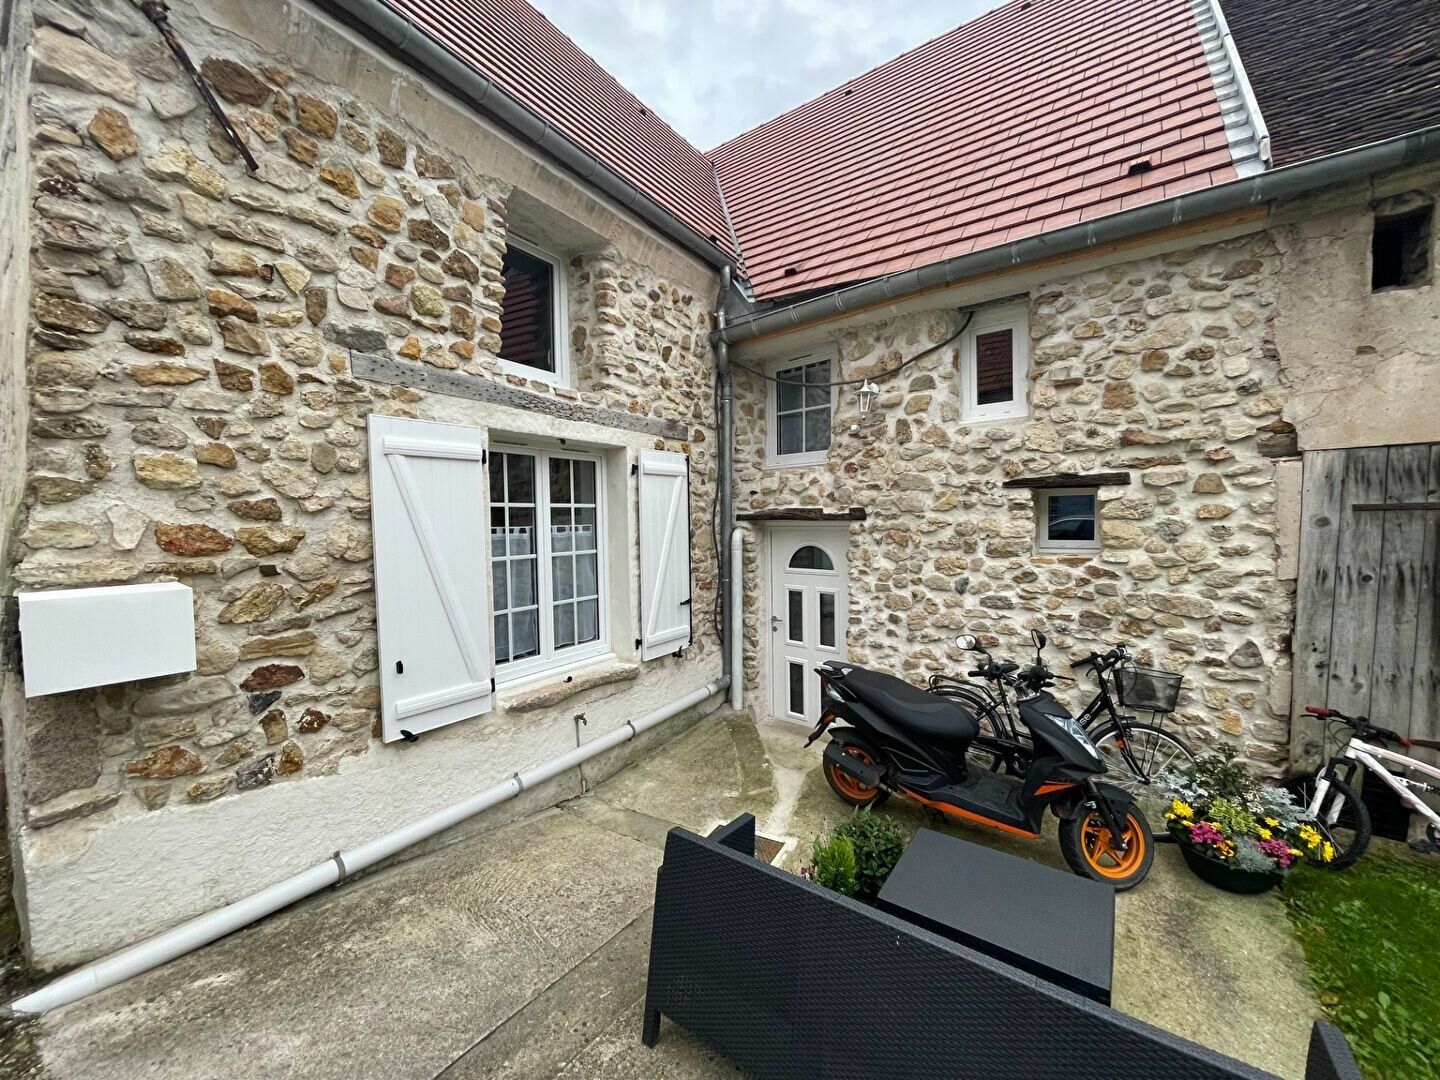 Maison à vendre 2 105m2 à Saâcy-sur-Marne vignette-1